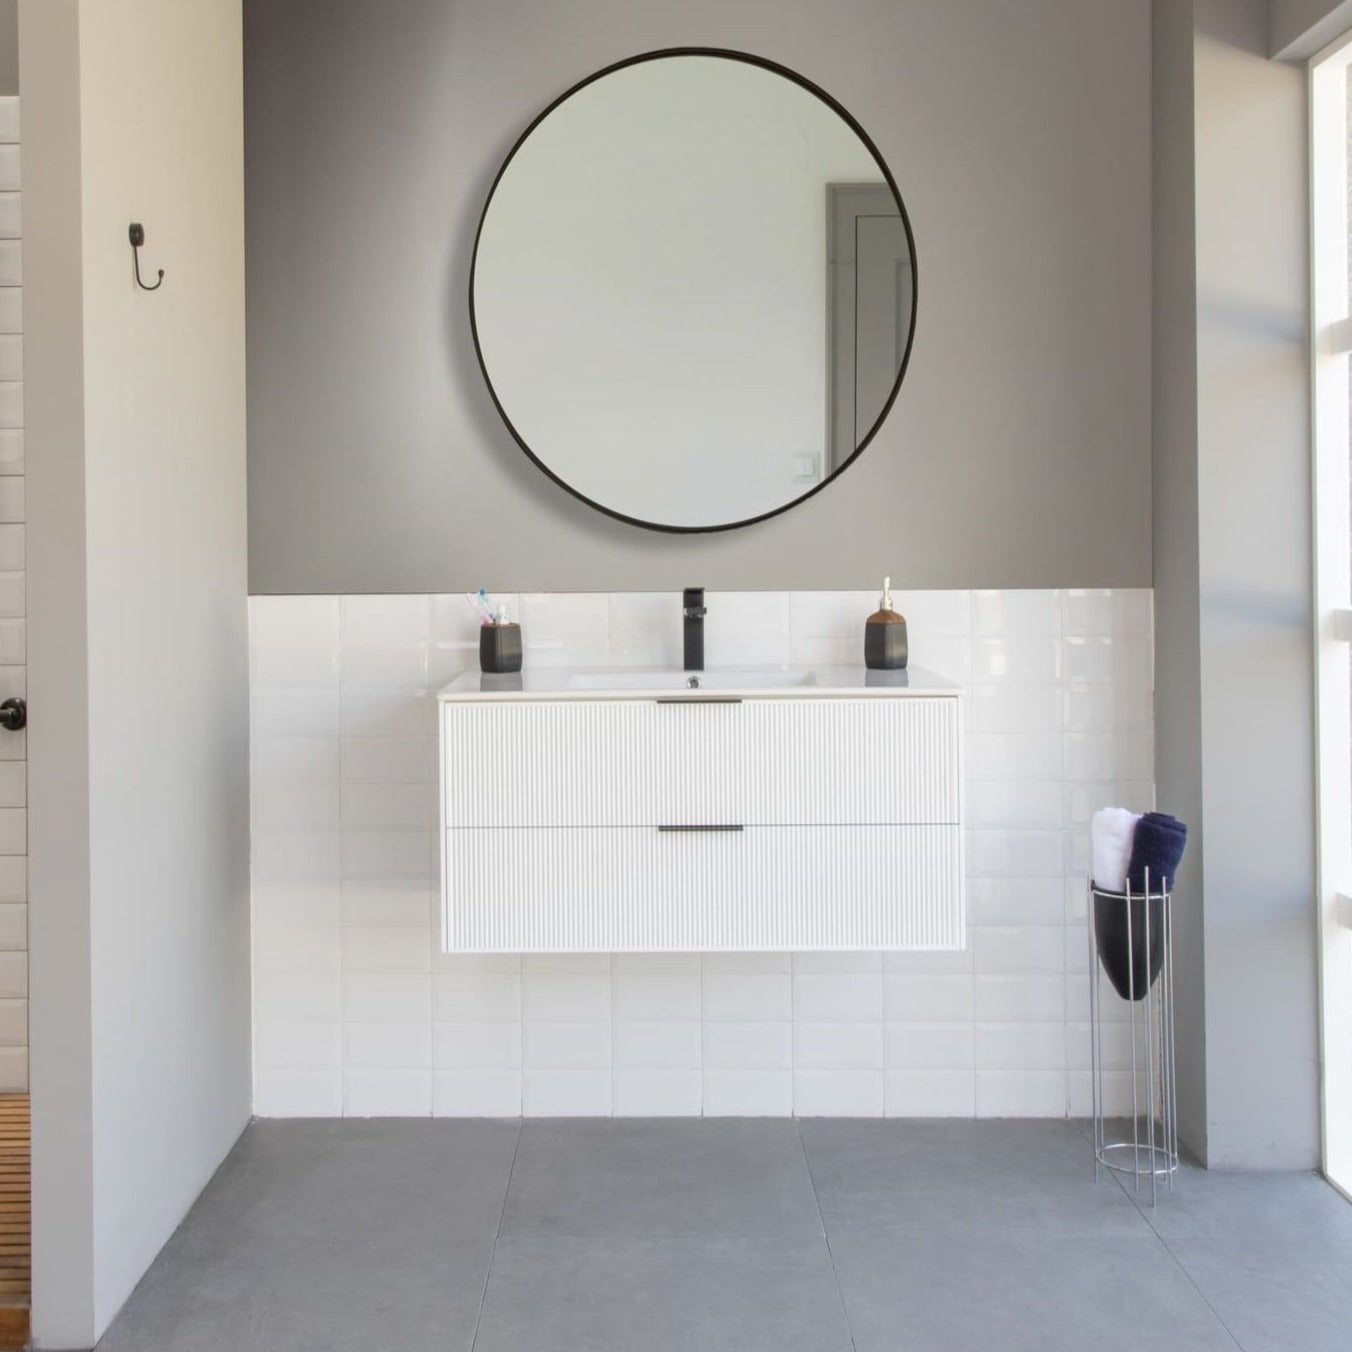 Sorrento Bathroom Vanity Homelero 36" #size_36" #color_white #hardware_black